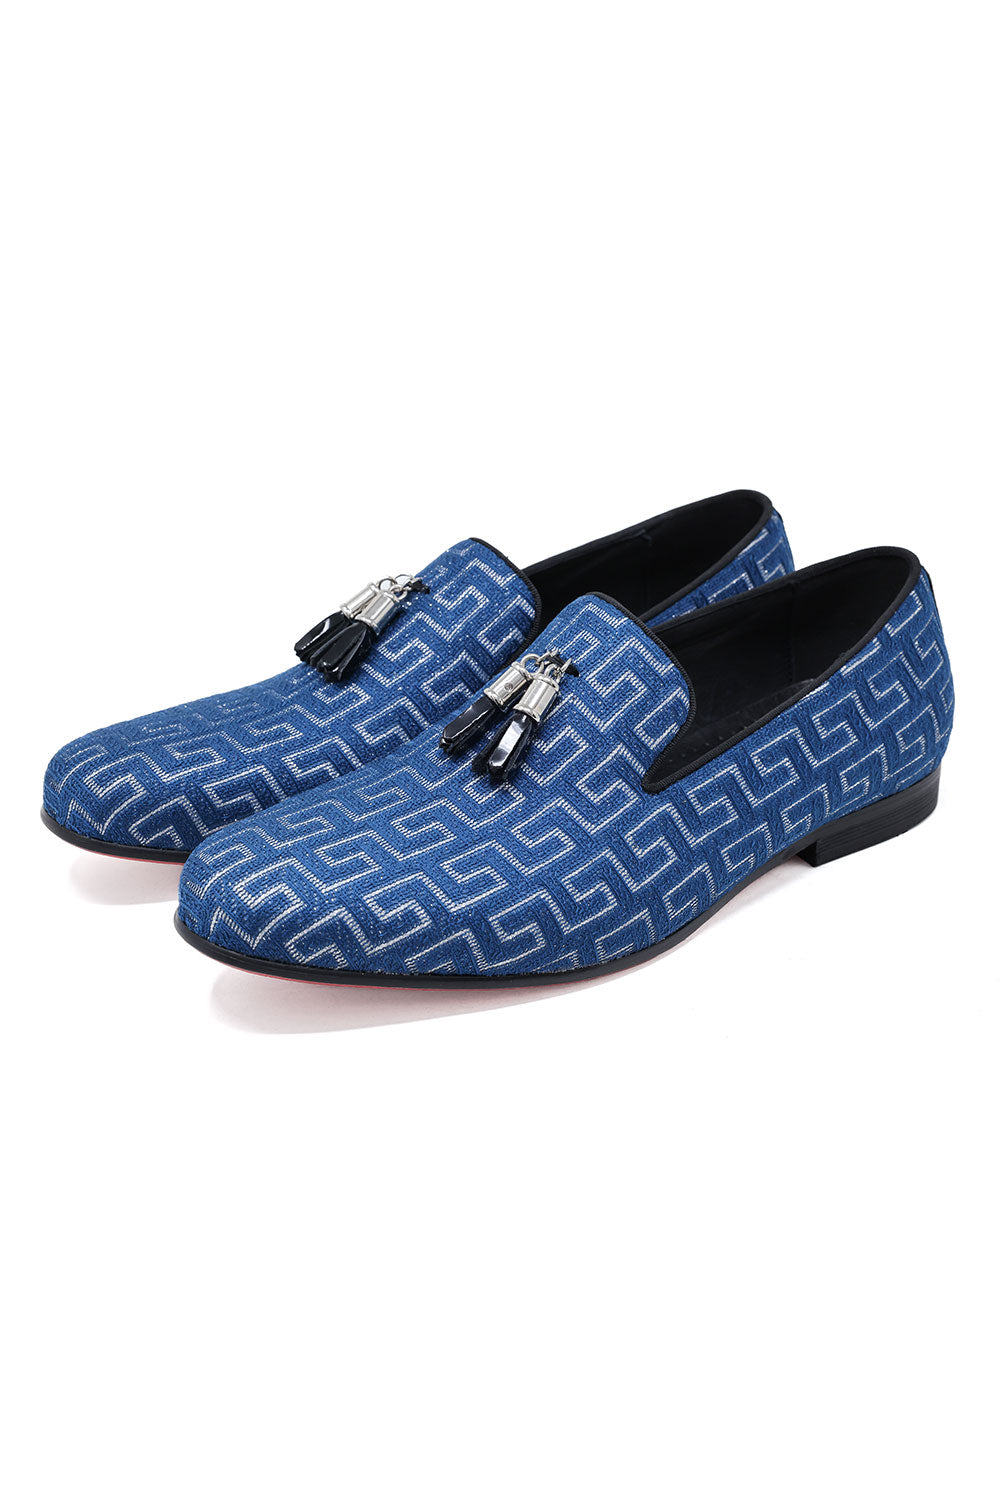 BARABAS Men's Rhinestone Greek key Pattern Tassel Loafer Shoes SH3087 Teal Silver